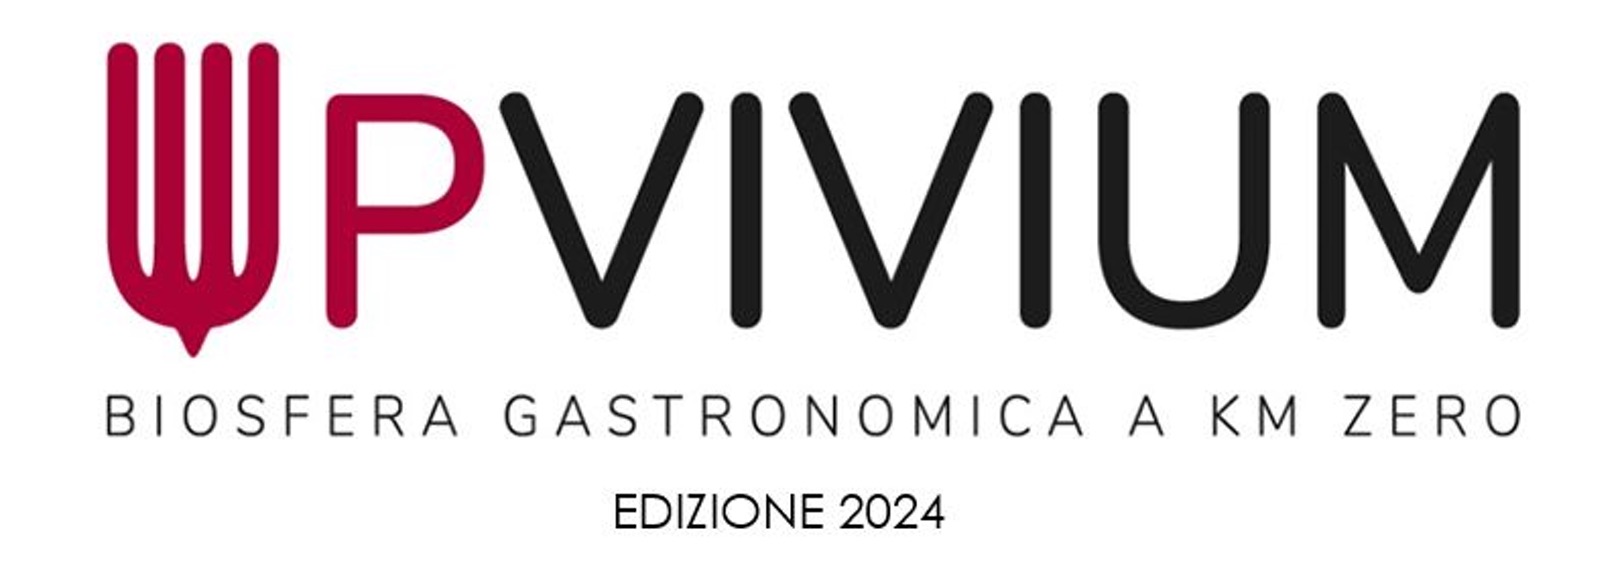 Logo Upvivium Edizione 2024